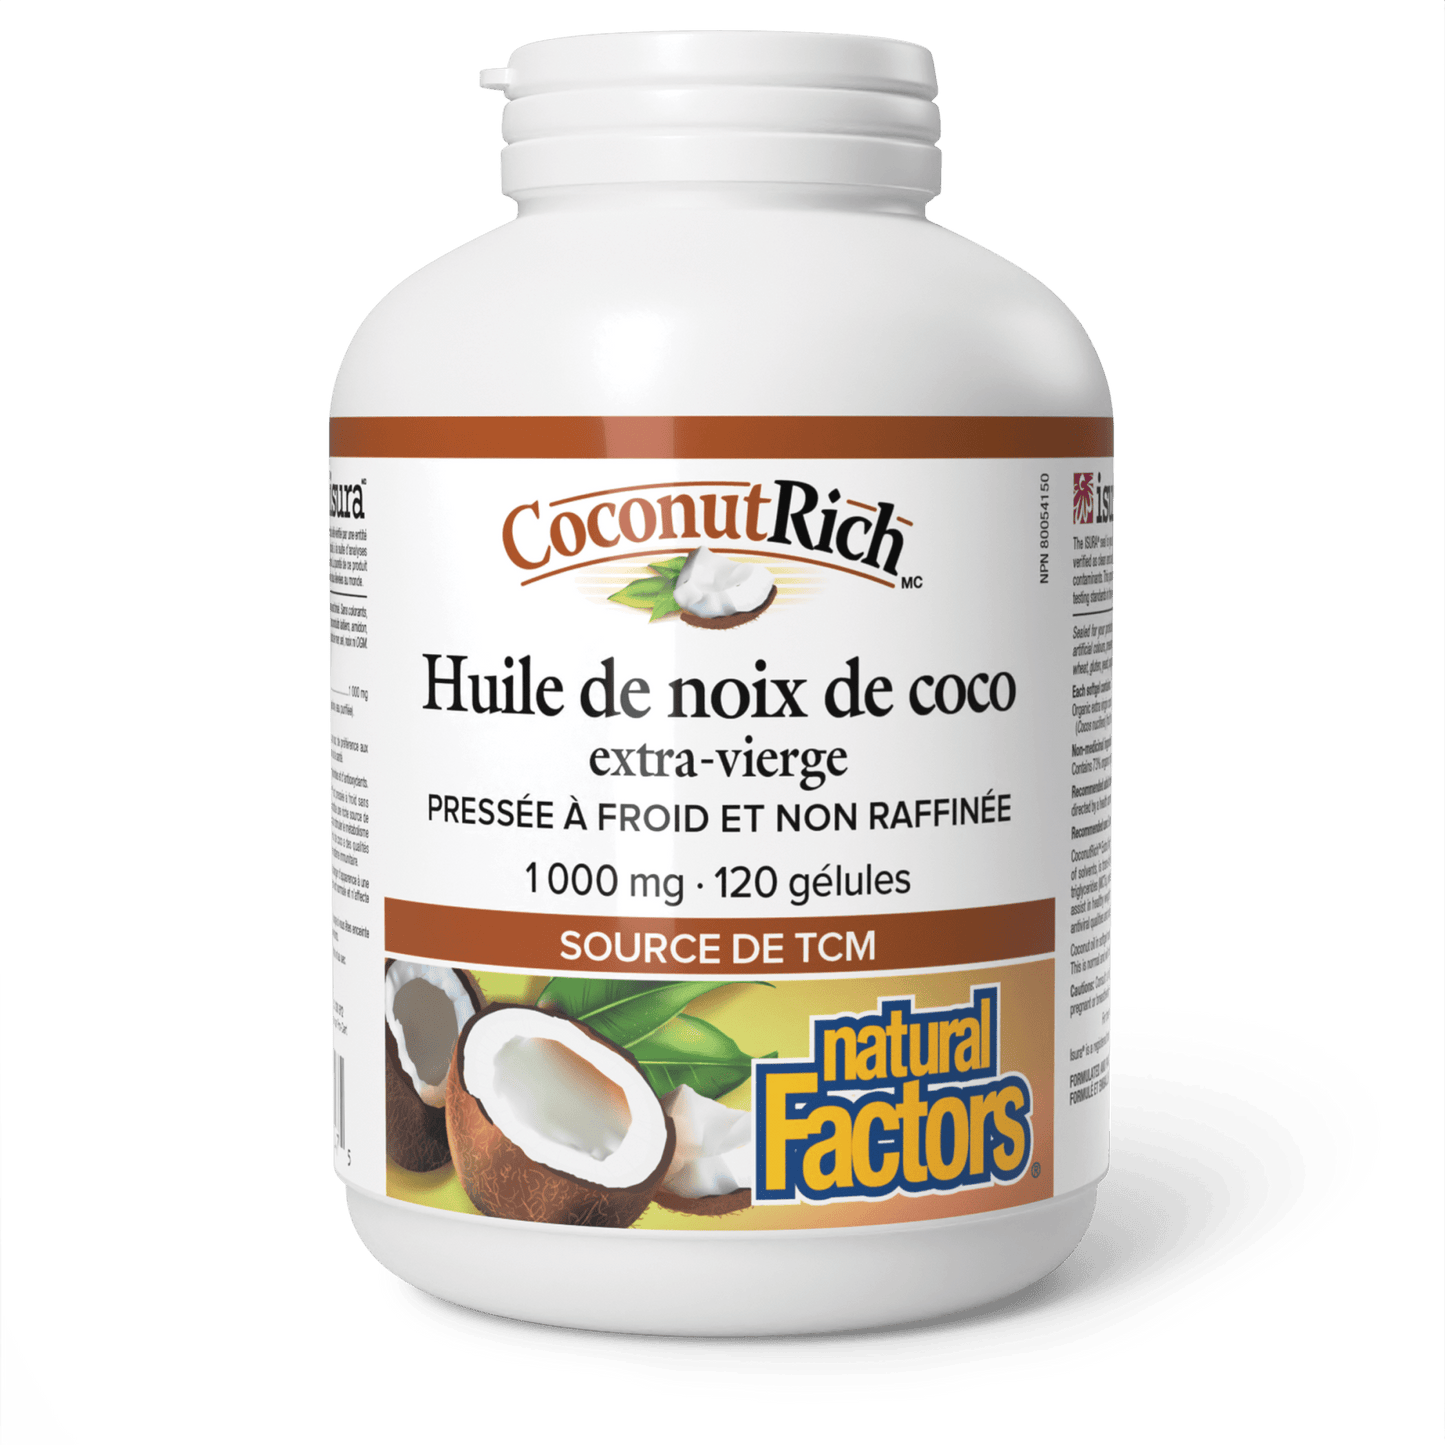 Huile de noix de coco extra-vierge CoconutRich(MC) 1 000 mg, Natural Factors|v|image|4547